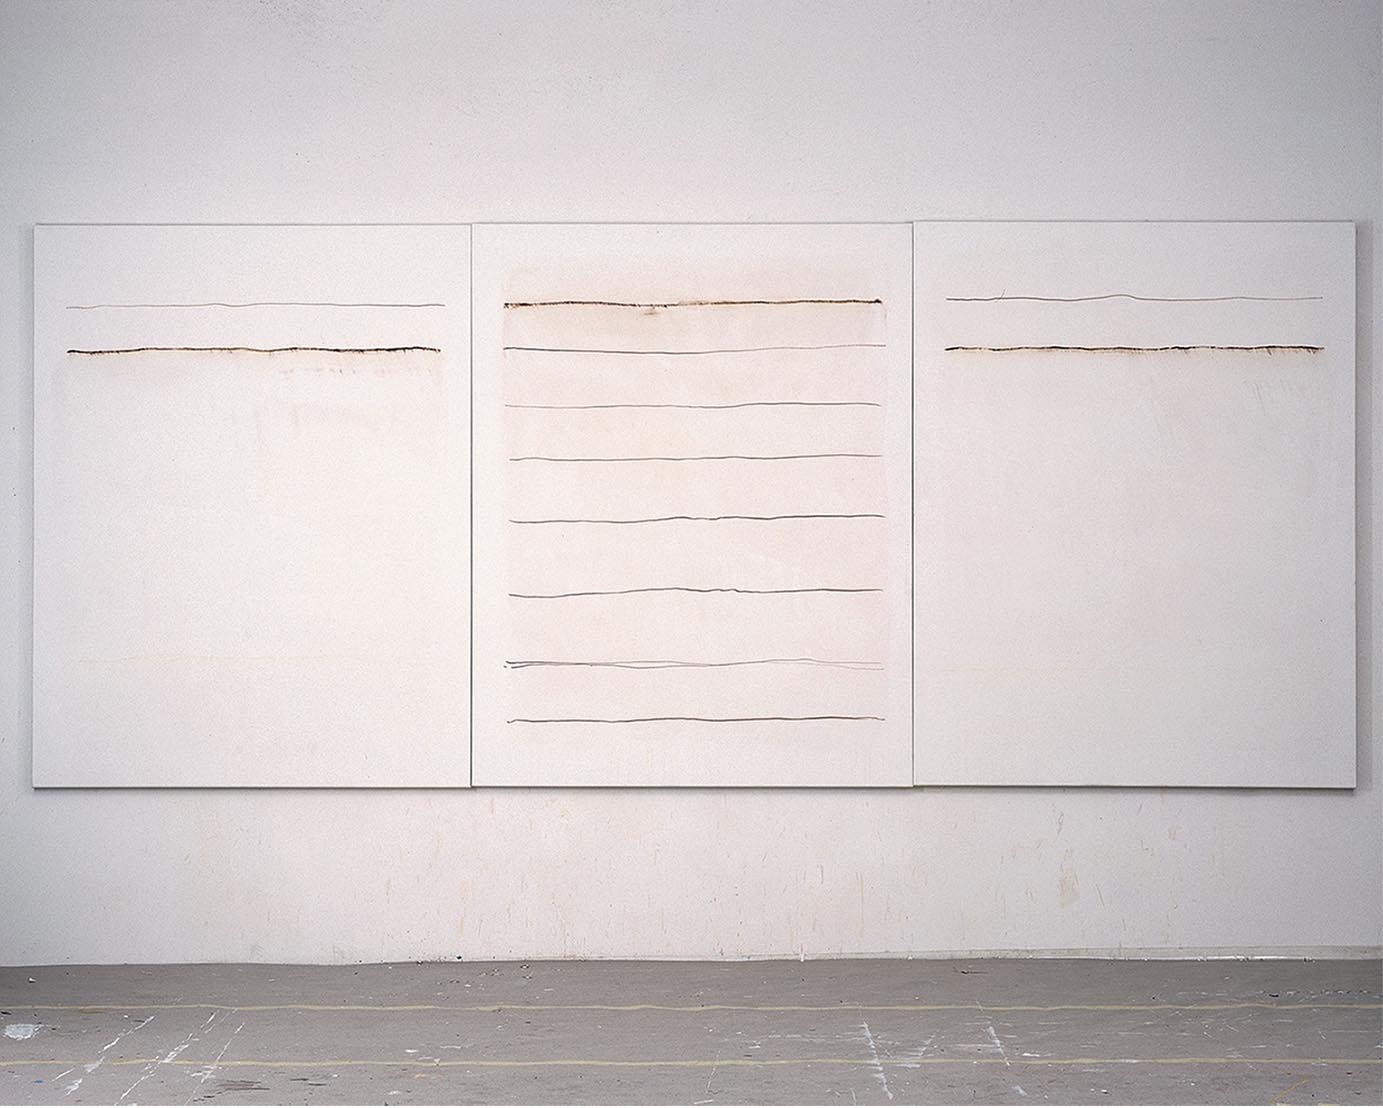 Lilo Rinkens, Linien, Tryptichon, 1999, Acryl und Tusche auf Leinwand, 180 x 420cm